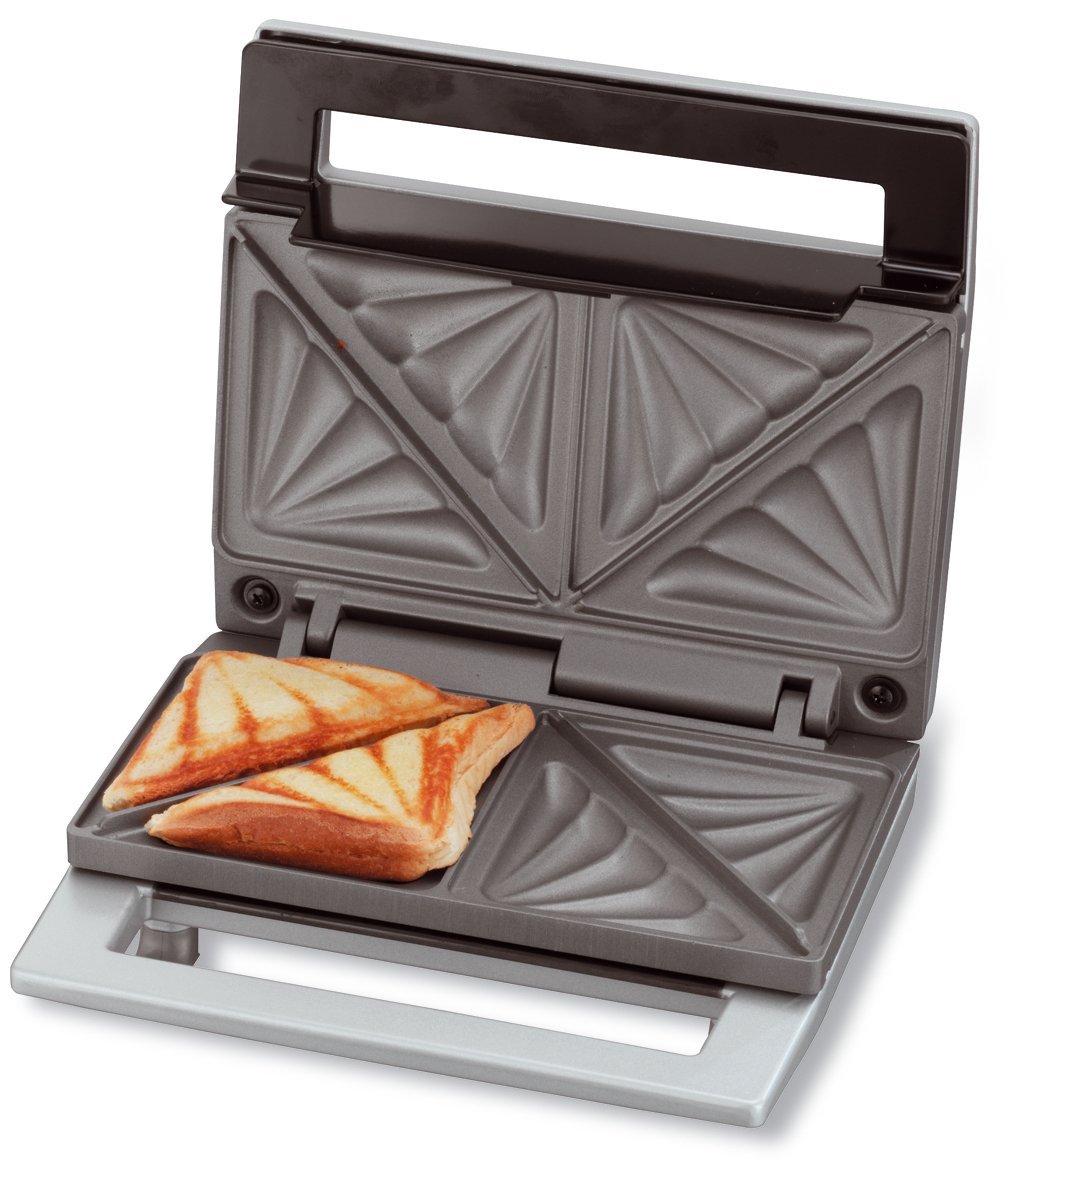 Máy Nướng Bánh Sandwich Cloer 62195